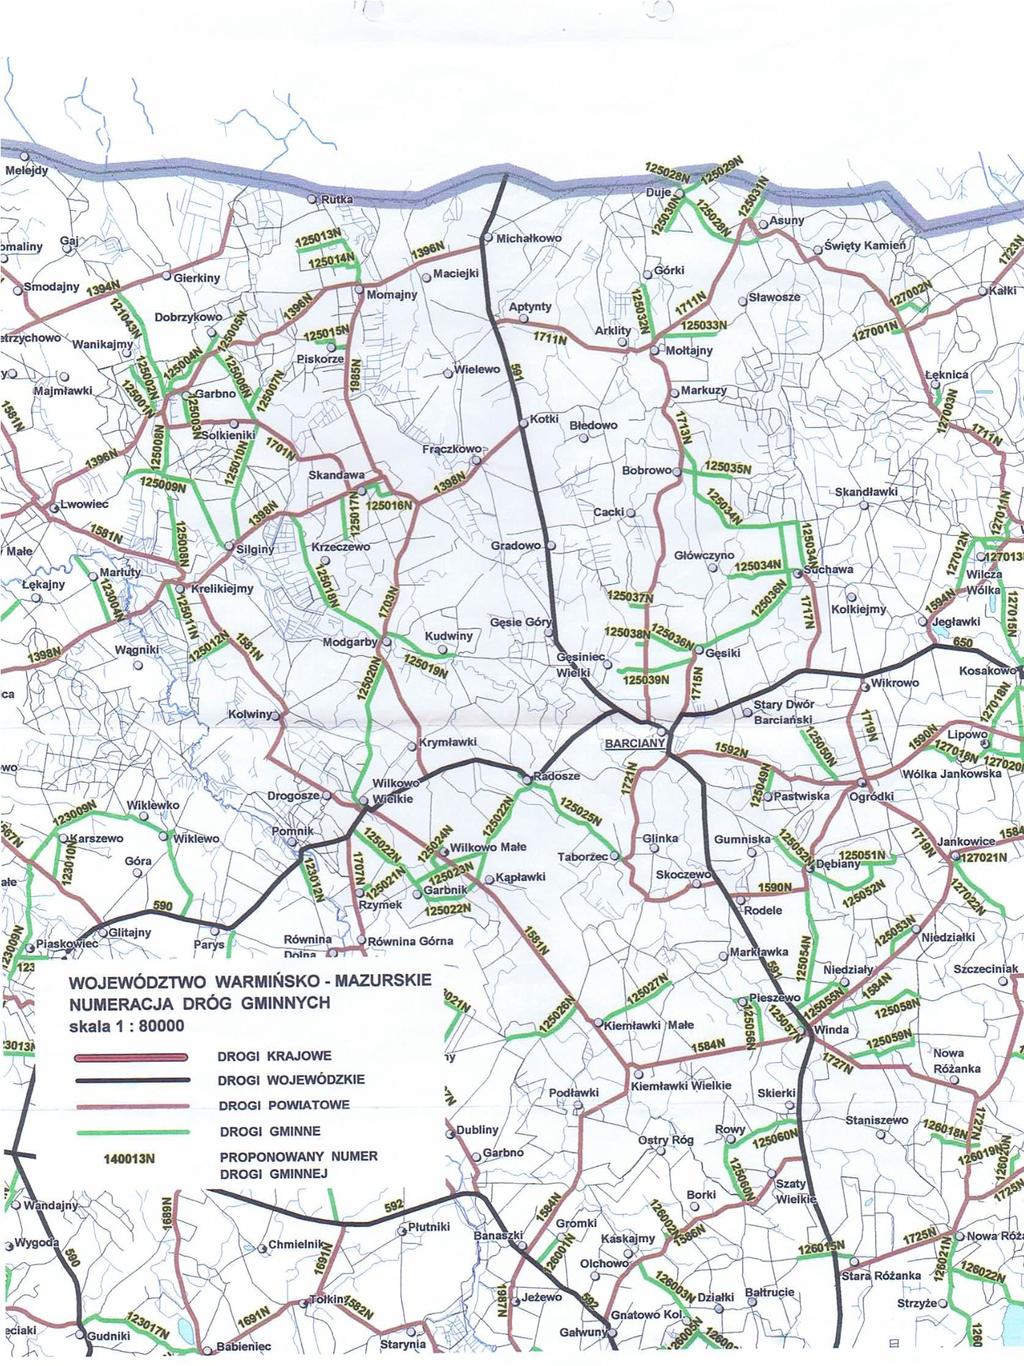 Sieć dróg gminnych obejmuje 103,72 km dróg o bardzo zróżnicowanym standardzie i stanowi w połączeniu z siecią głównie dróg powiatowych system obsługi lokalnej.